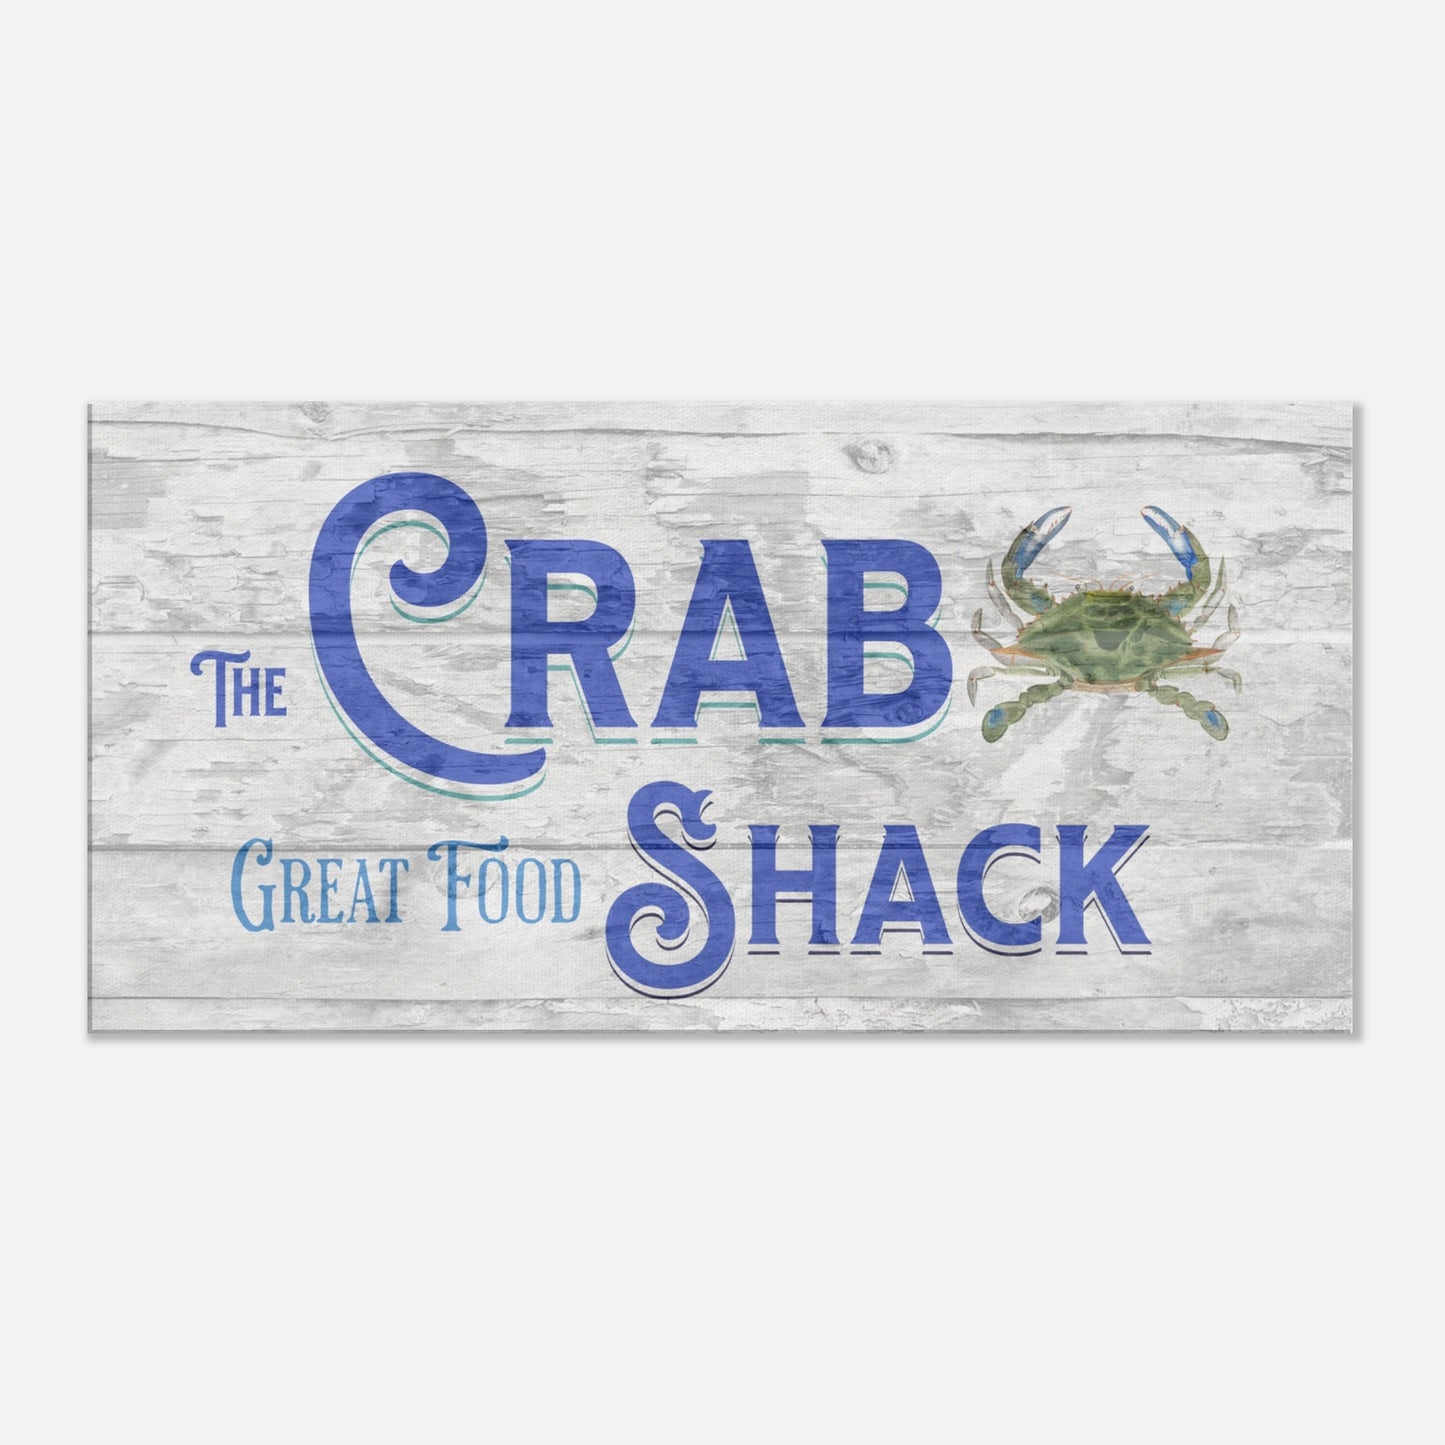 The Crab Shack Canvas Wall Print at Caribbean Rays